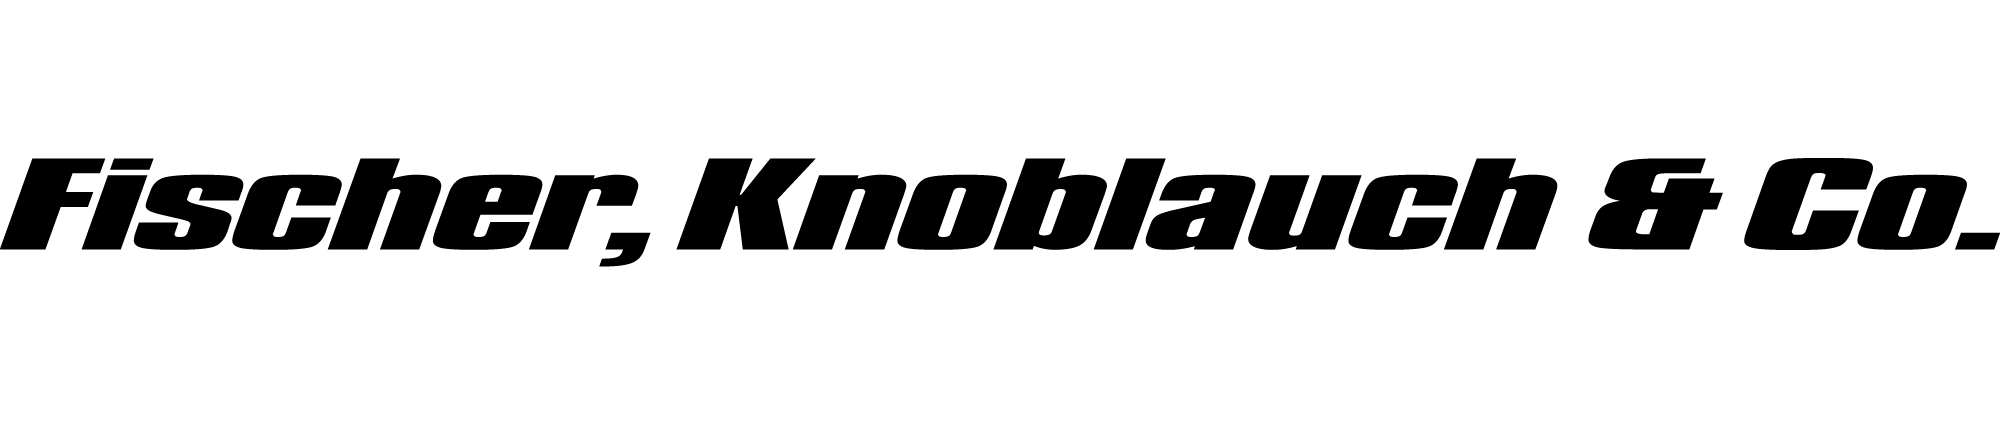 Fischer, Knoblauch & Co. Medienproduktionsges. mbH Logo